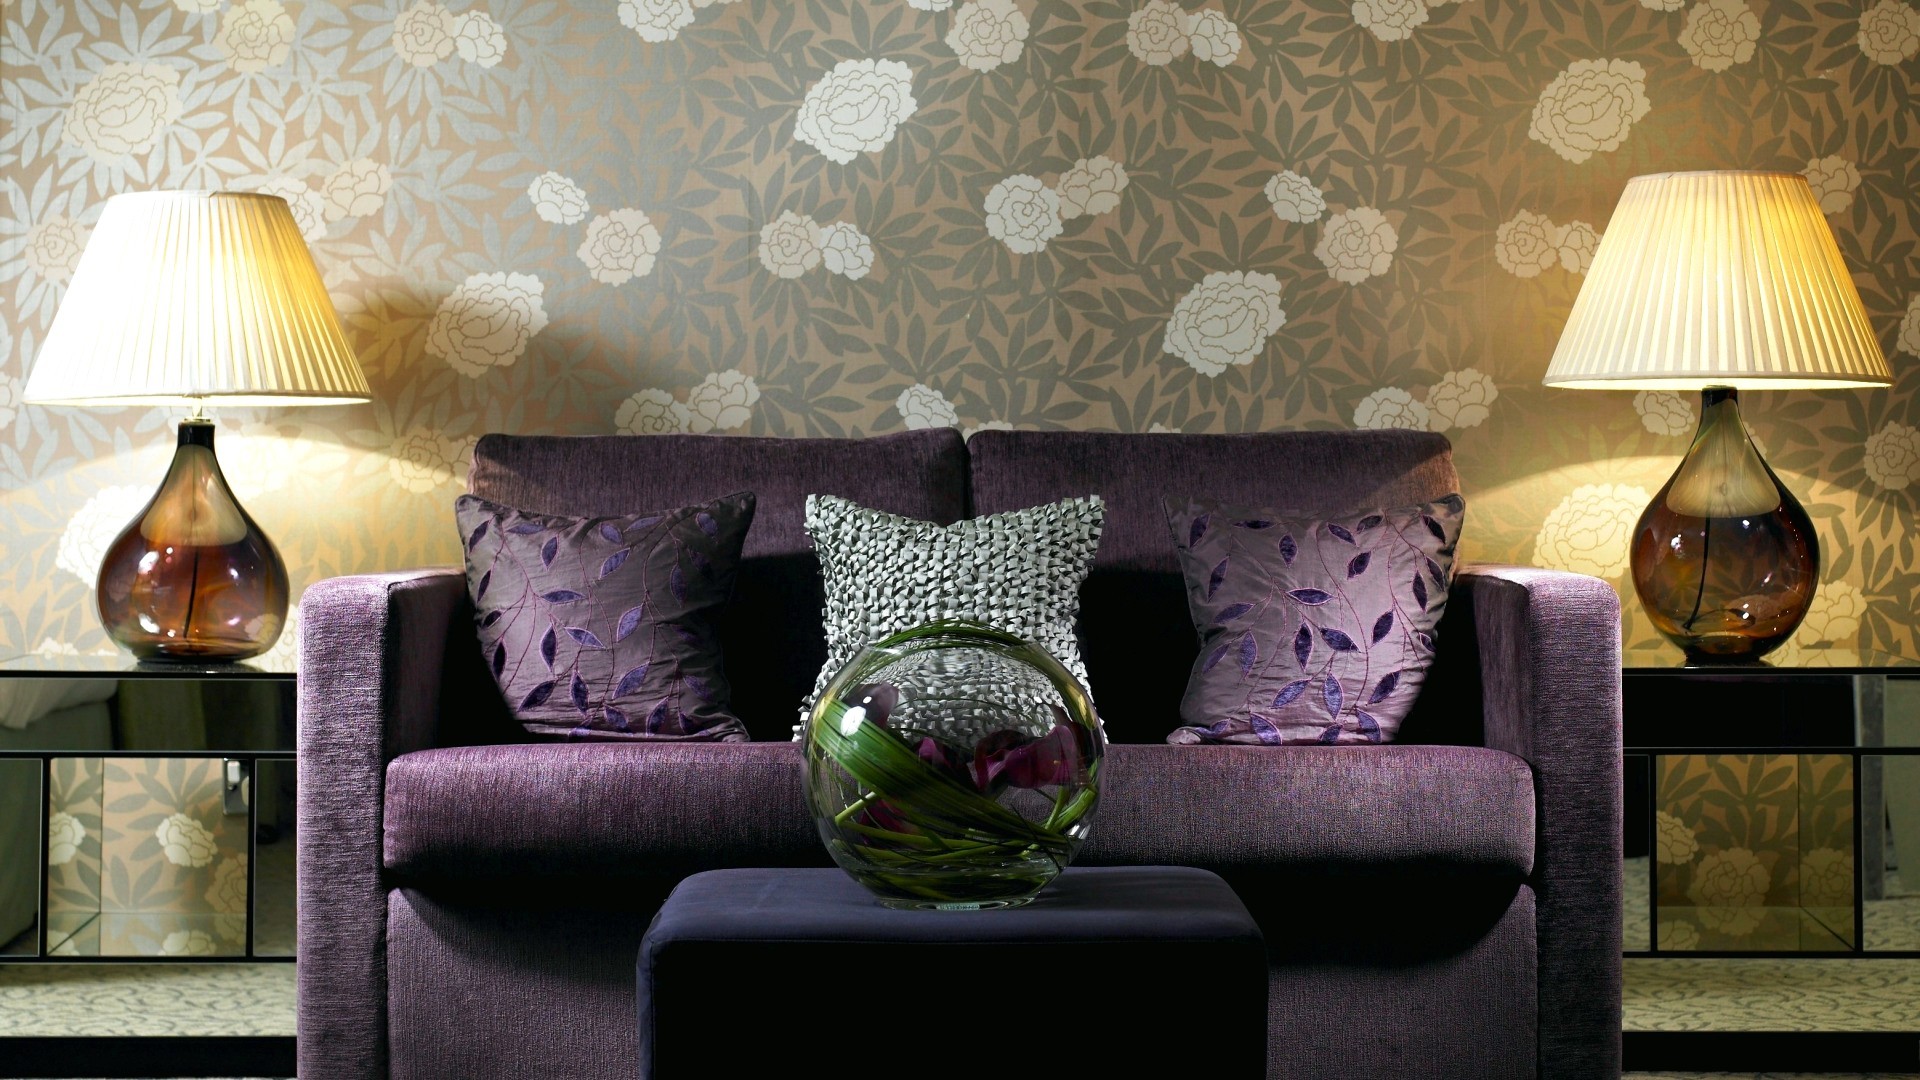 picture: lamp, furniture, interior, sofa (image)